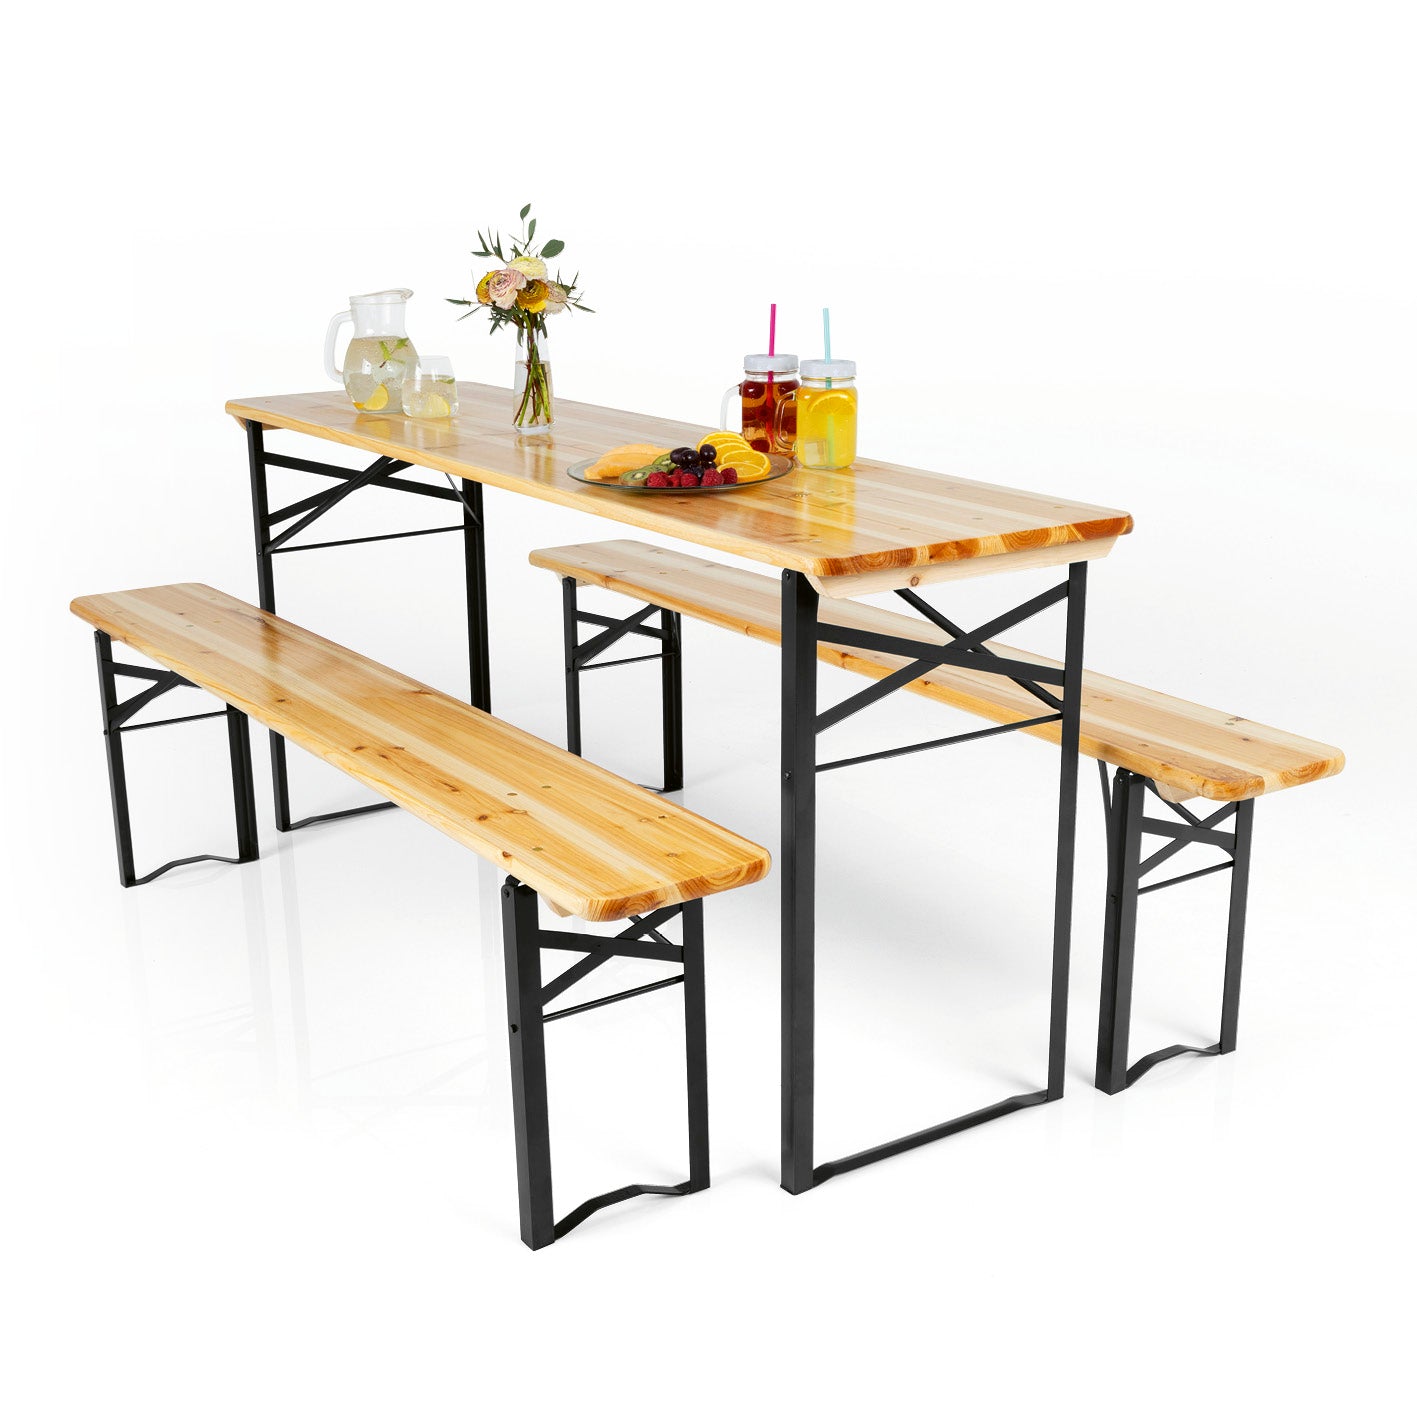 Bierzeltgarnitur Set (1 Tisch mit 2 Sitzbänken) - 170 cm - holzfarben/schwarz von EASYmaxx